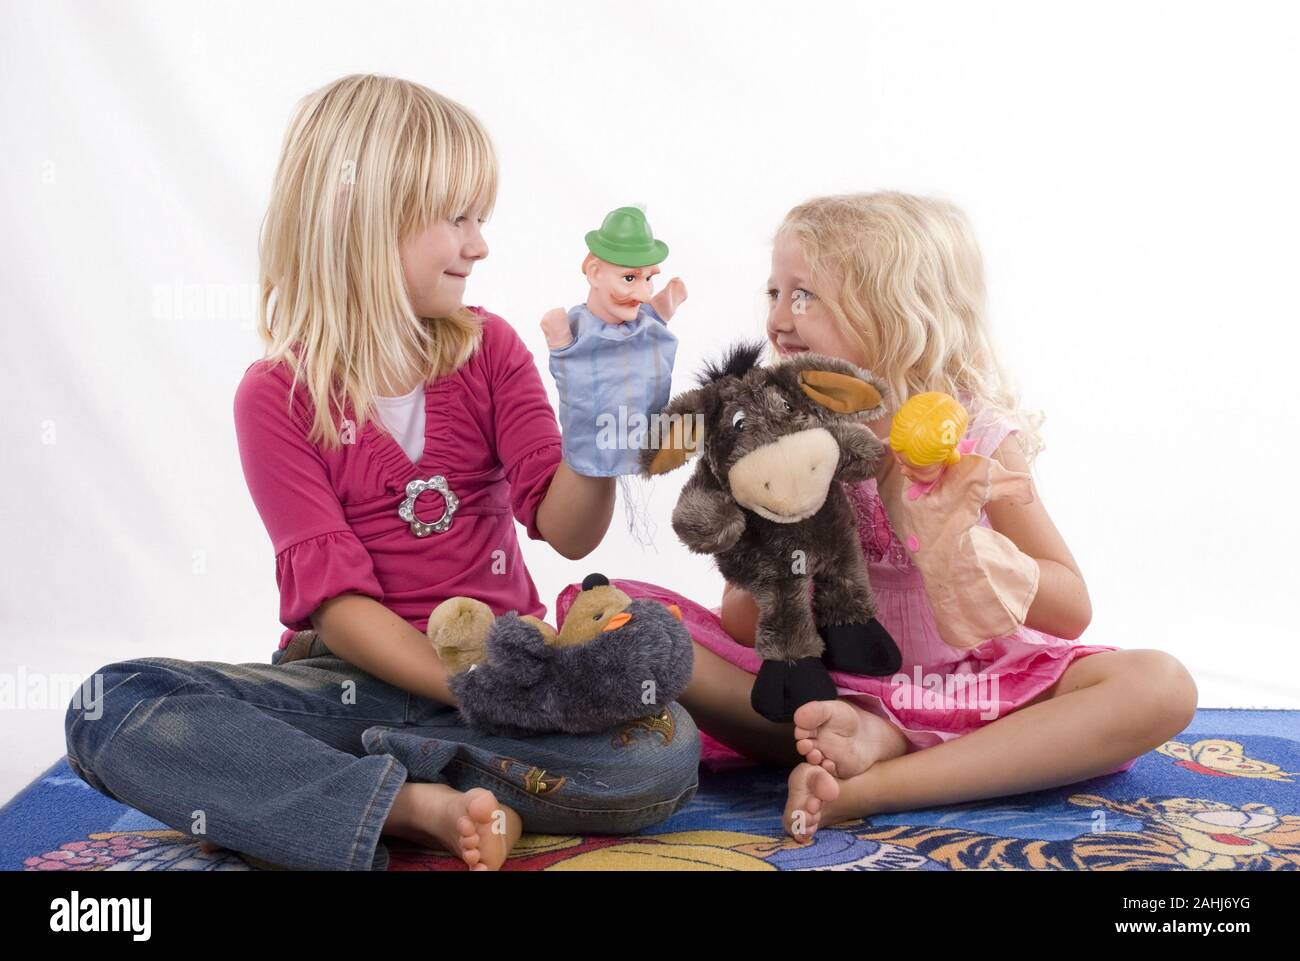 Zwei blonde Mädchen, 6 und 7 Jahre alt,  spielen mit Handpuppen, Kasperle, Figuren, Theater, Freunde, Geschwister, Kasperletheater, MR:Yes Stock Photo